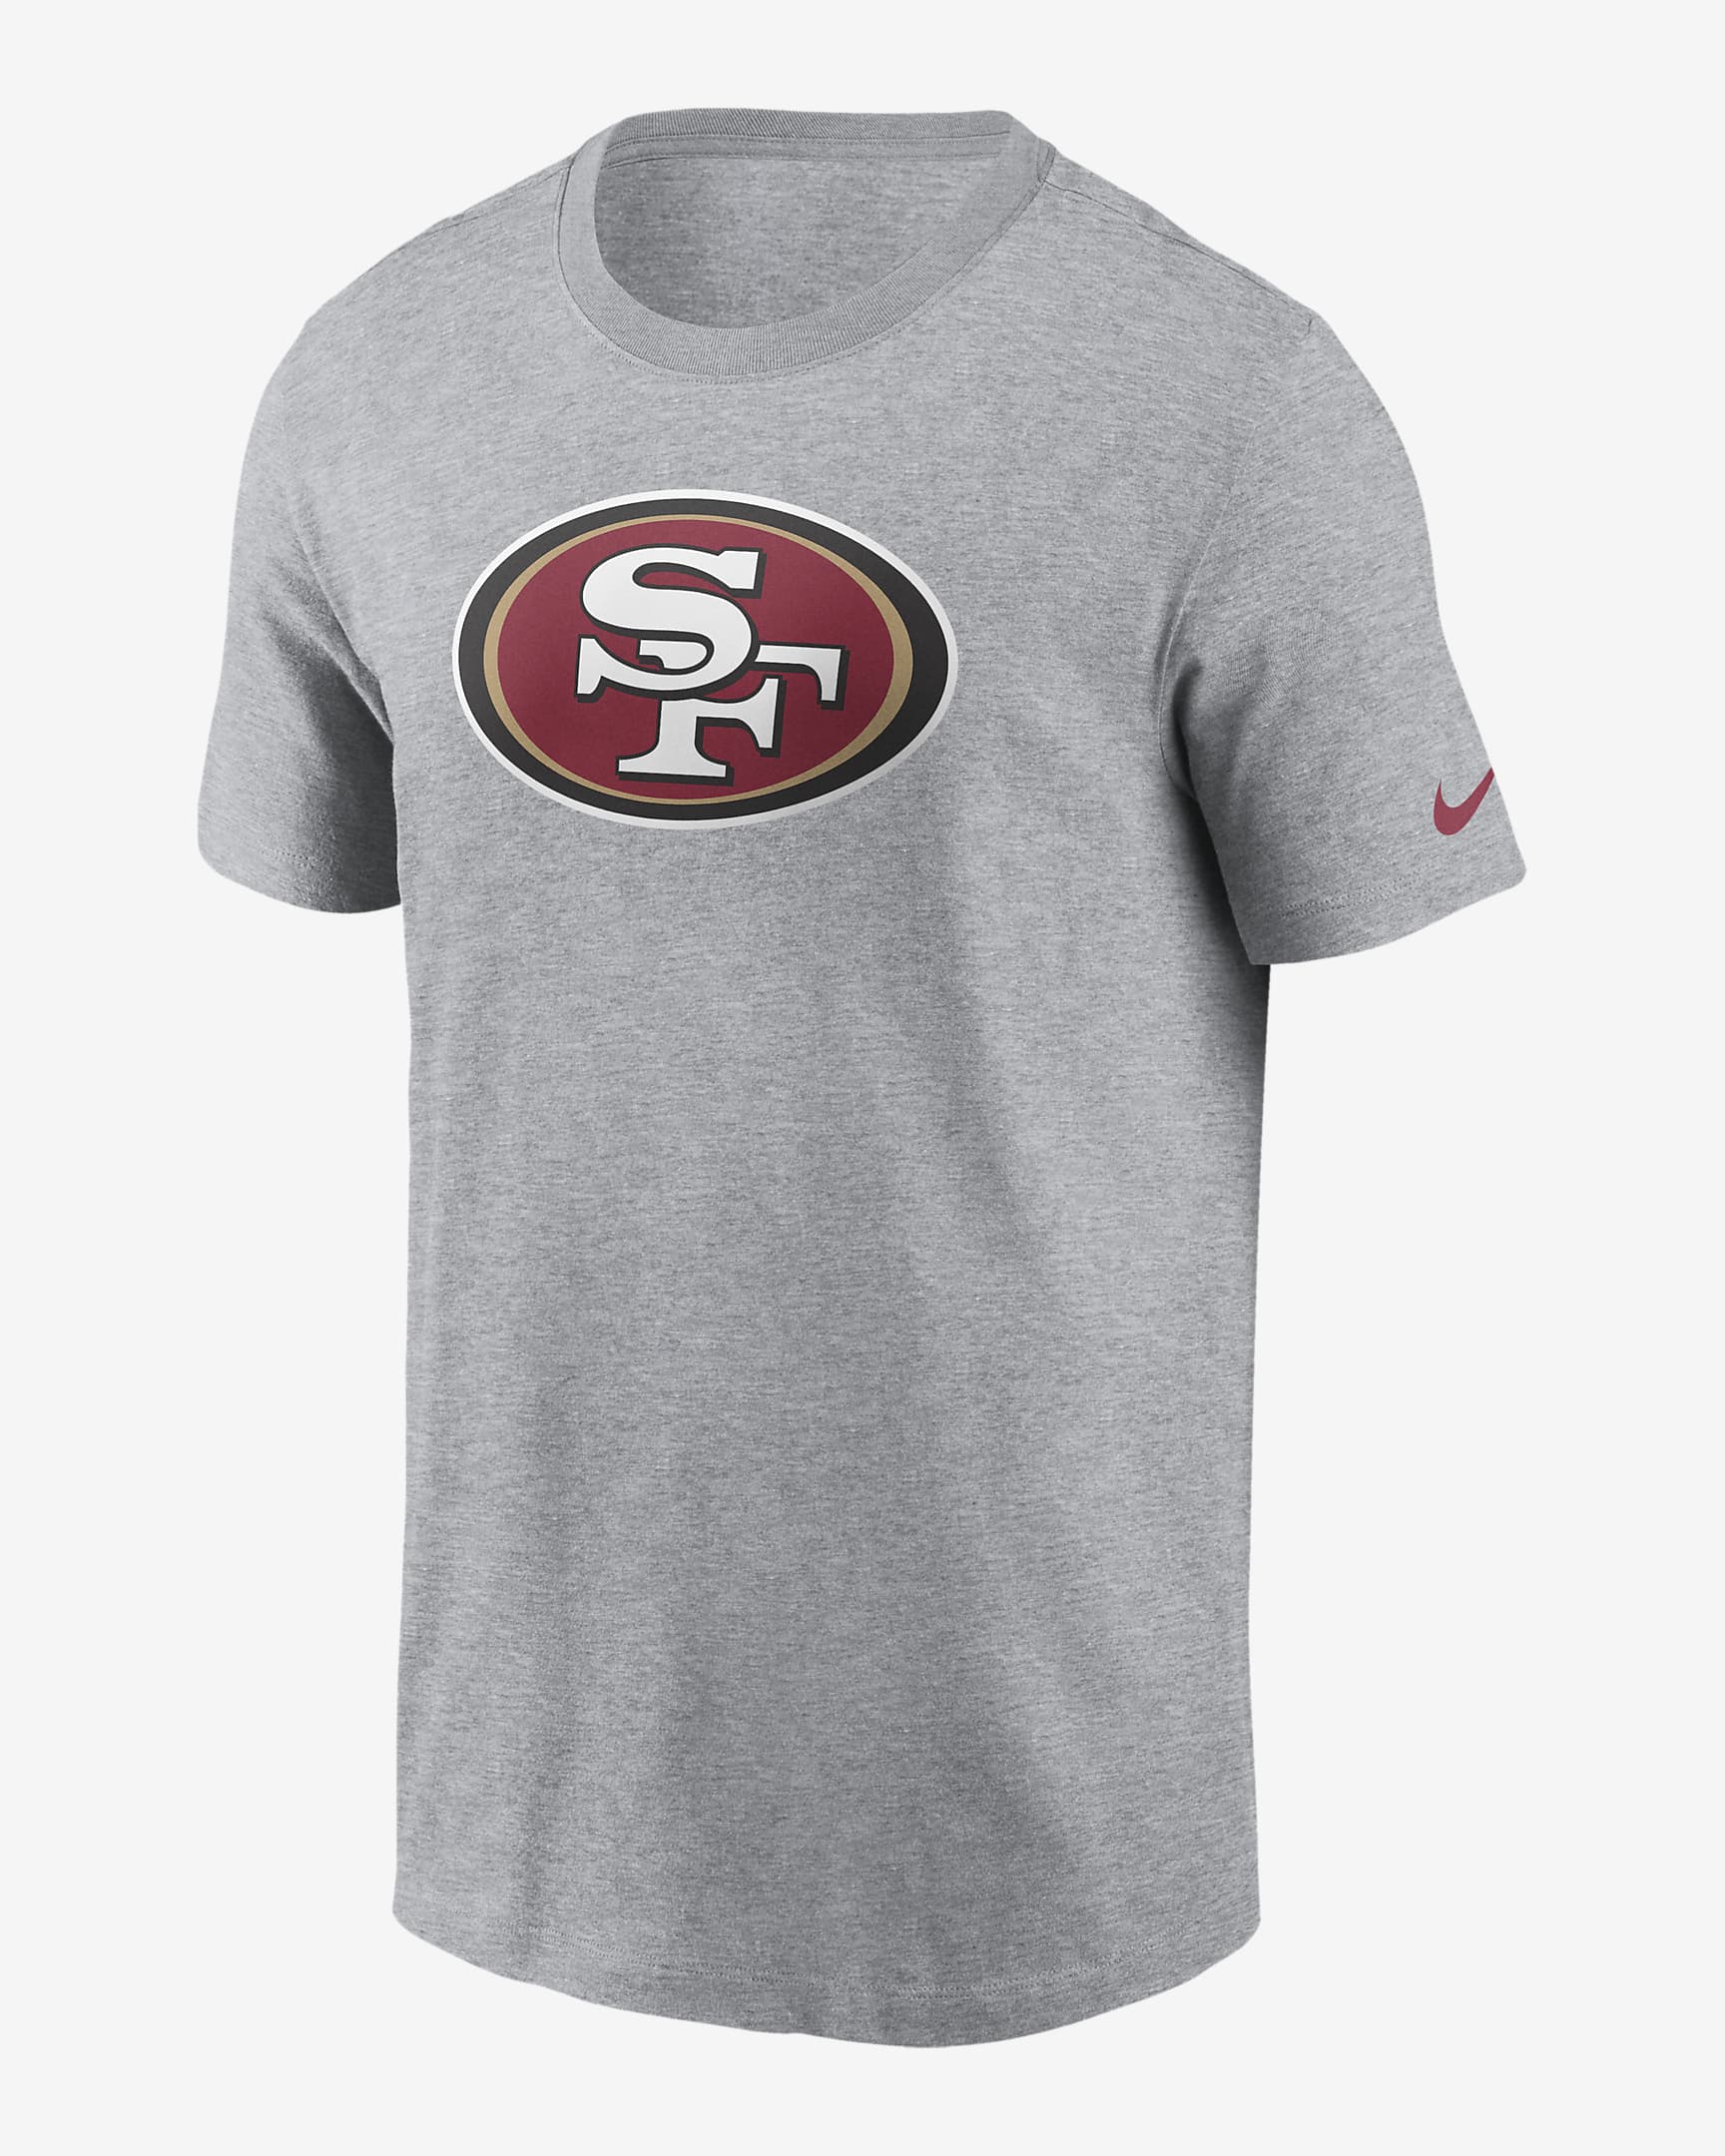 Playera Nike de la NFL para hombre San Francisco 49ers Logo Essential ...